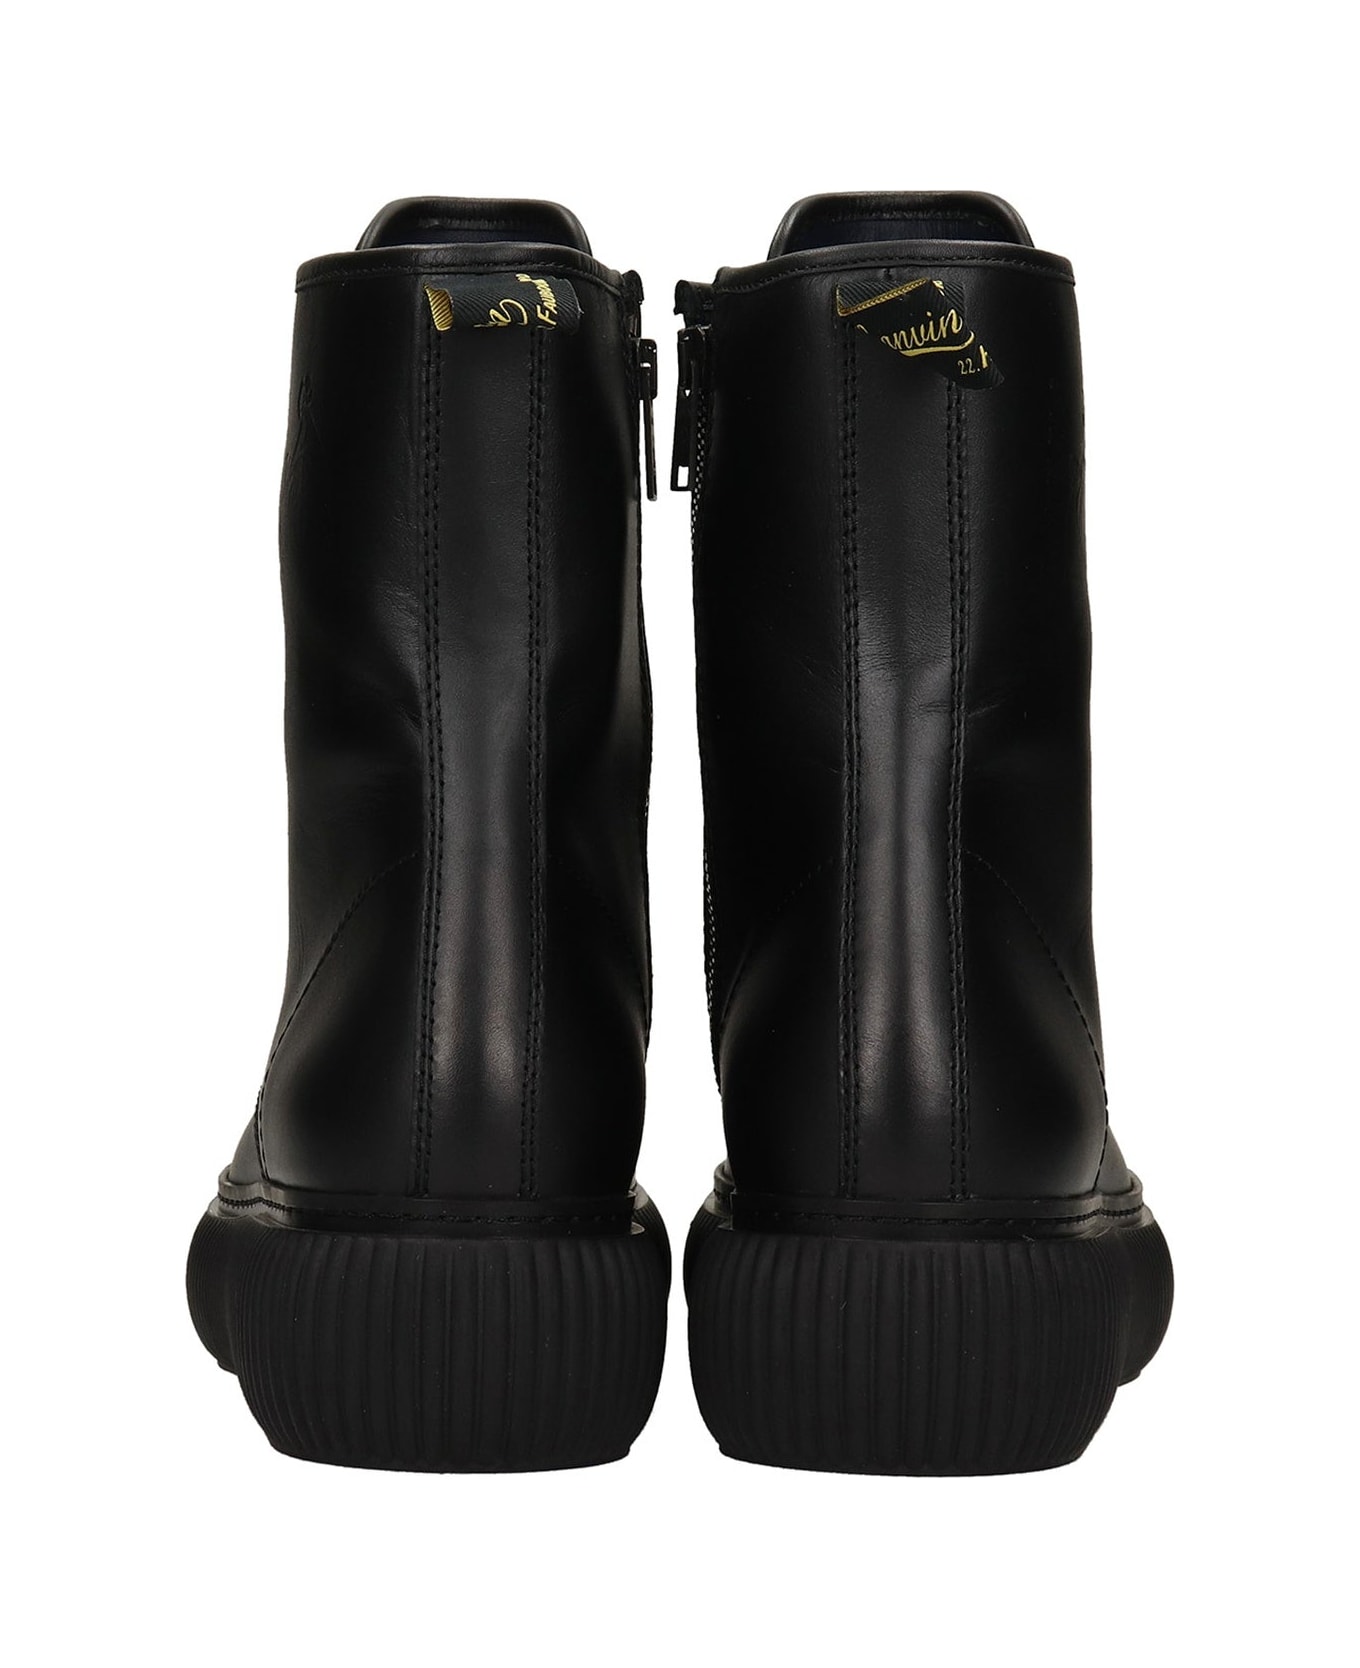 Lanvin Arpege Ankle Boots - Black